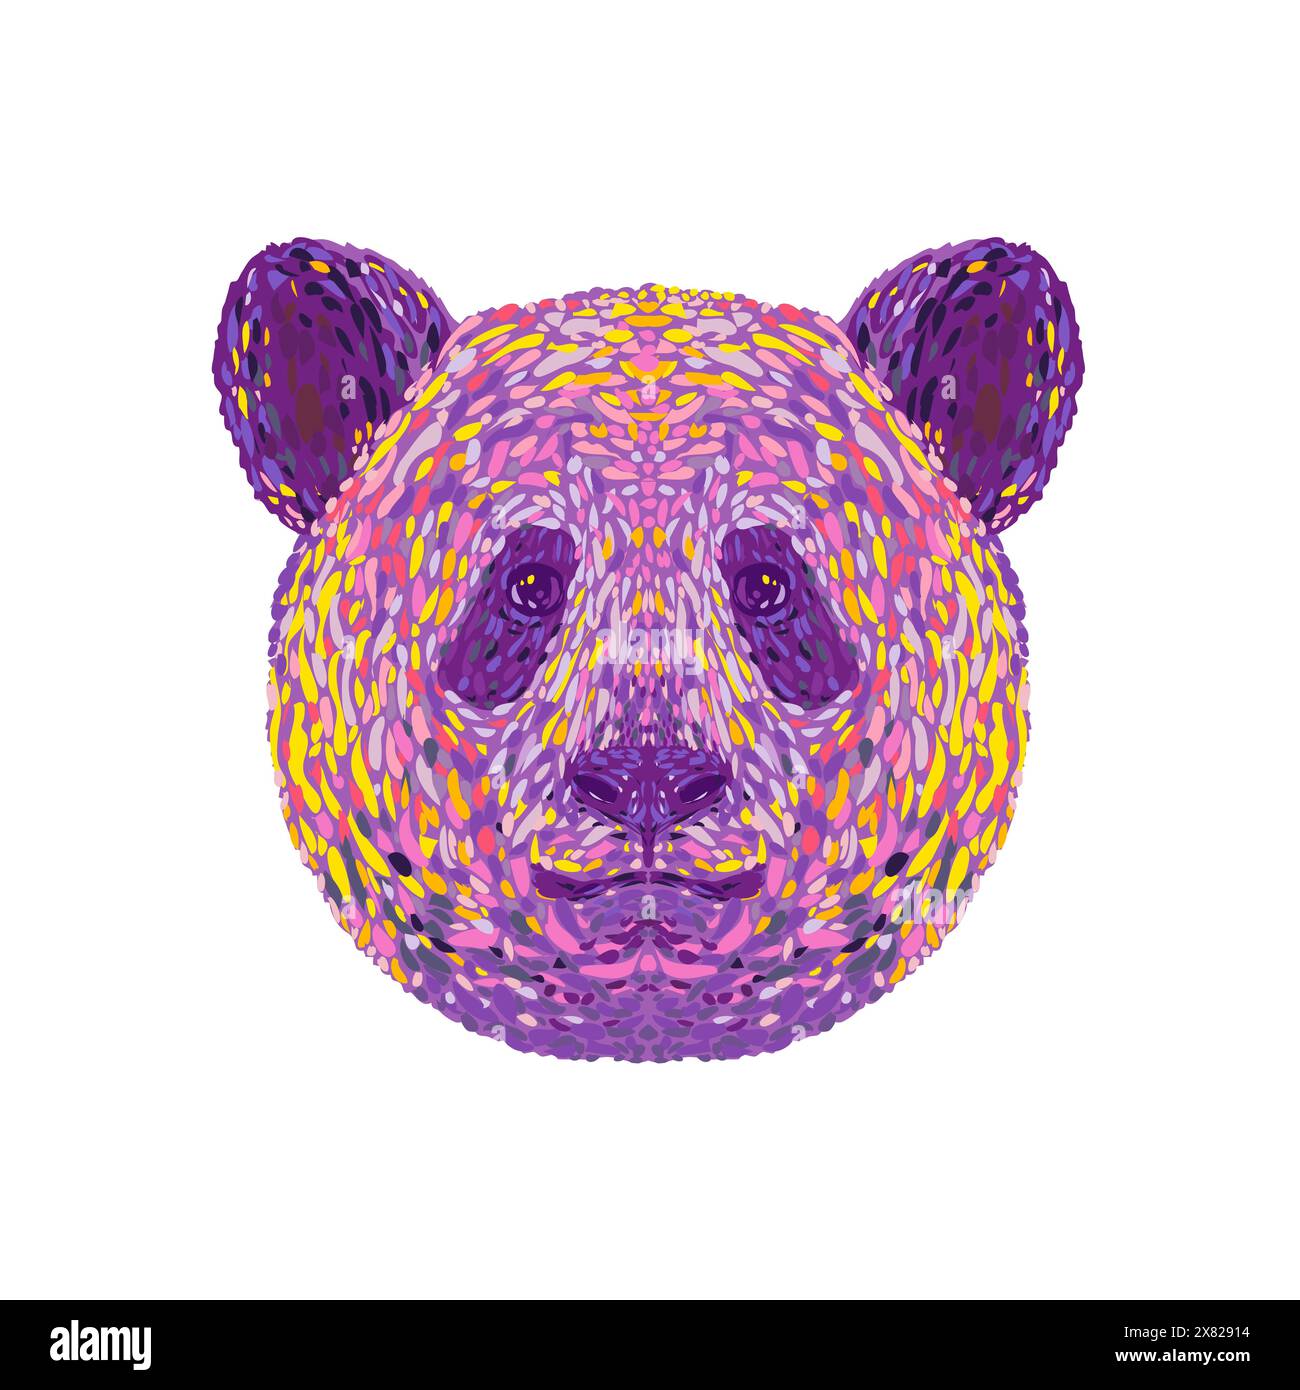 Illustrazione in stile pointillista, impressionista o pop art della testa di un gigante panda Ailuropoda melanoleuca o talvolta orso panda visto di fronte Illustrazione Vettoriale